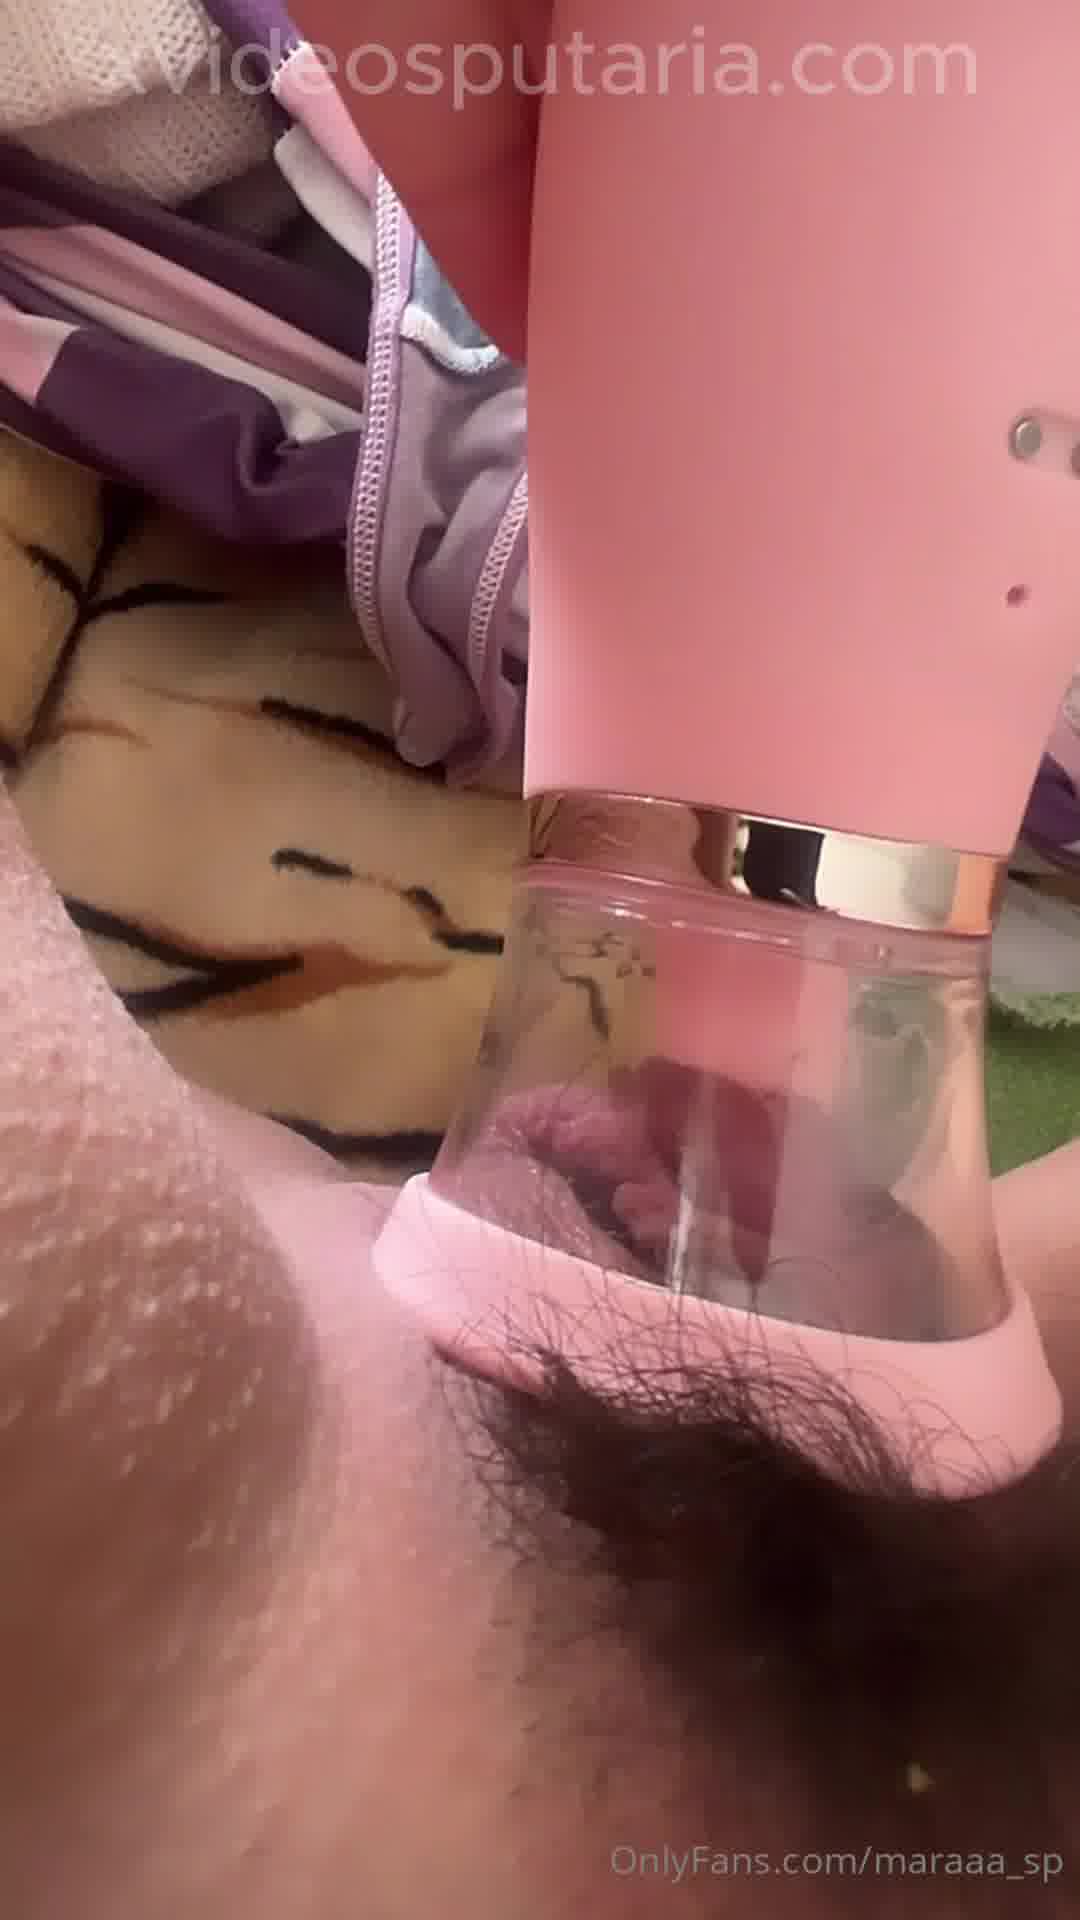 xxx Vídeos da Mara SP mostrando os peitões no carro e sugando a buceta com brinquedo erótico mulher pelada xvideos